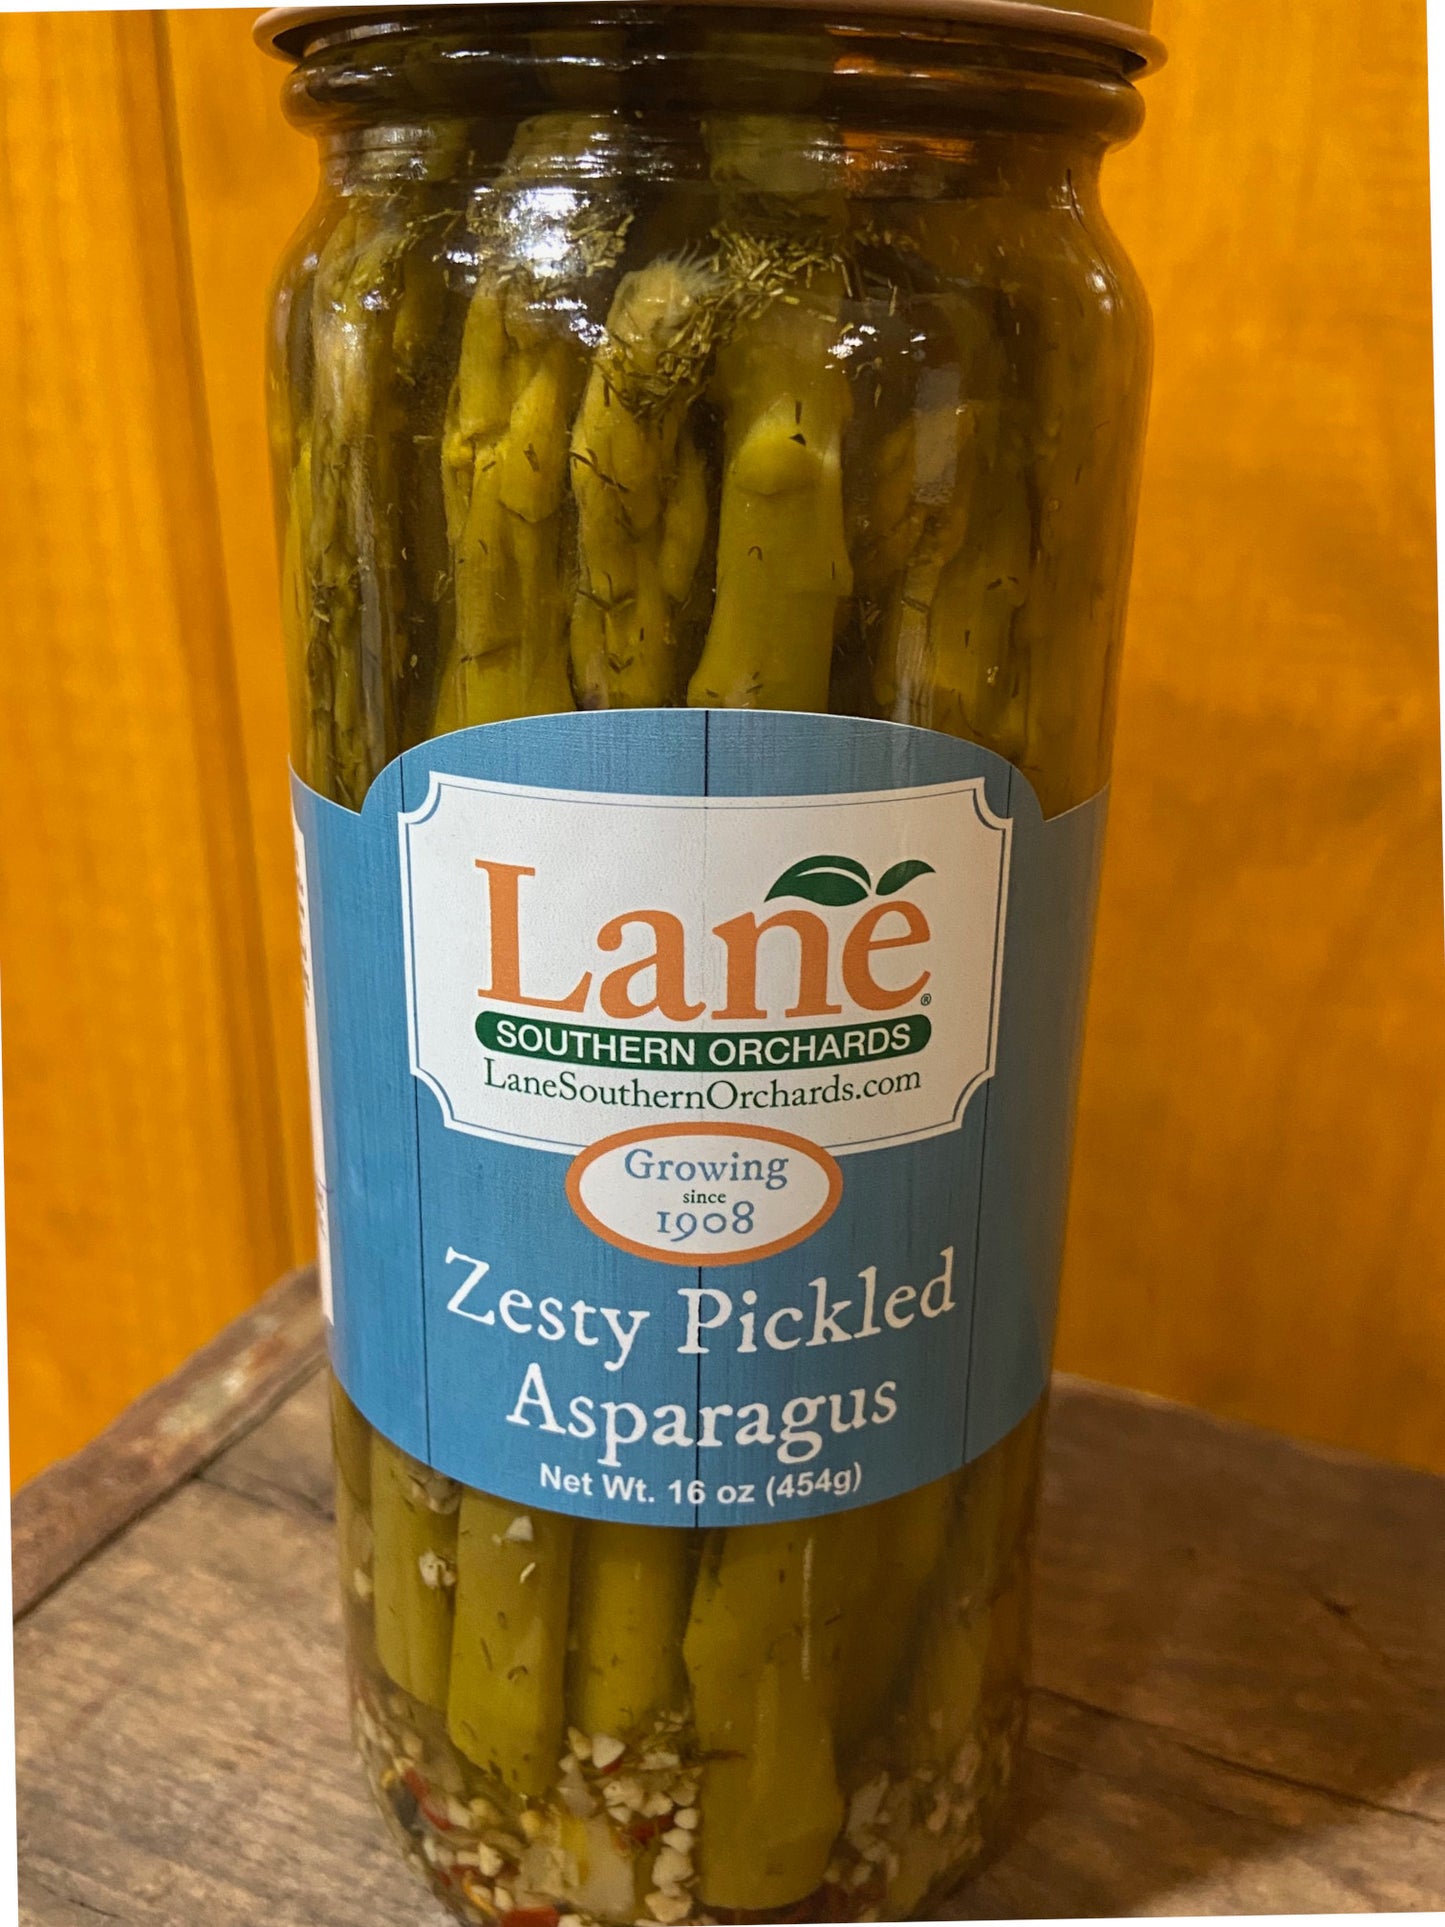 Zesty Pickled Asparagus